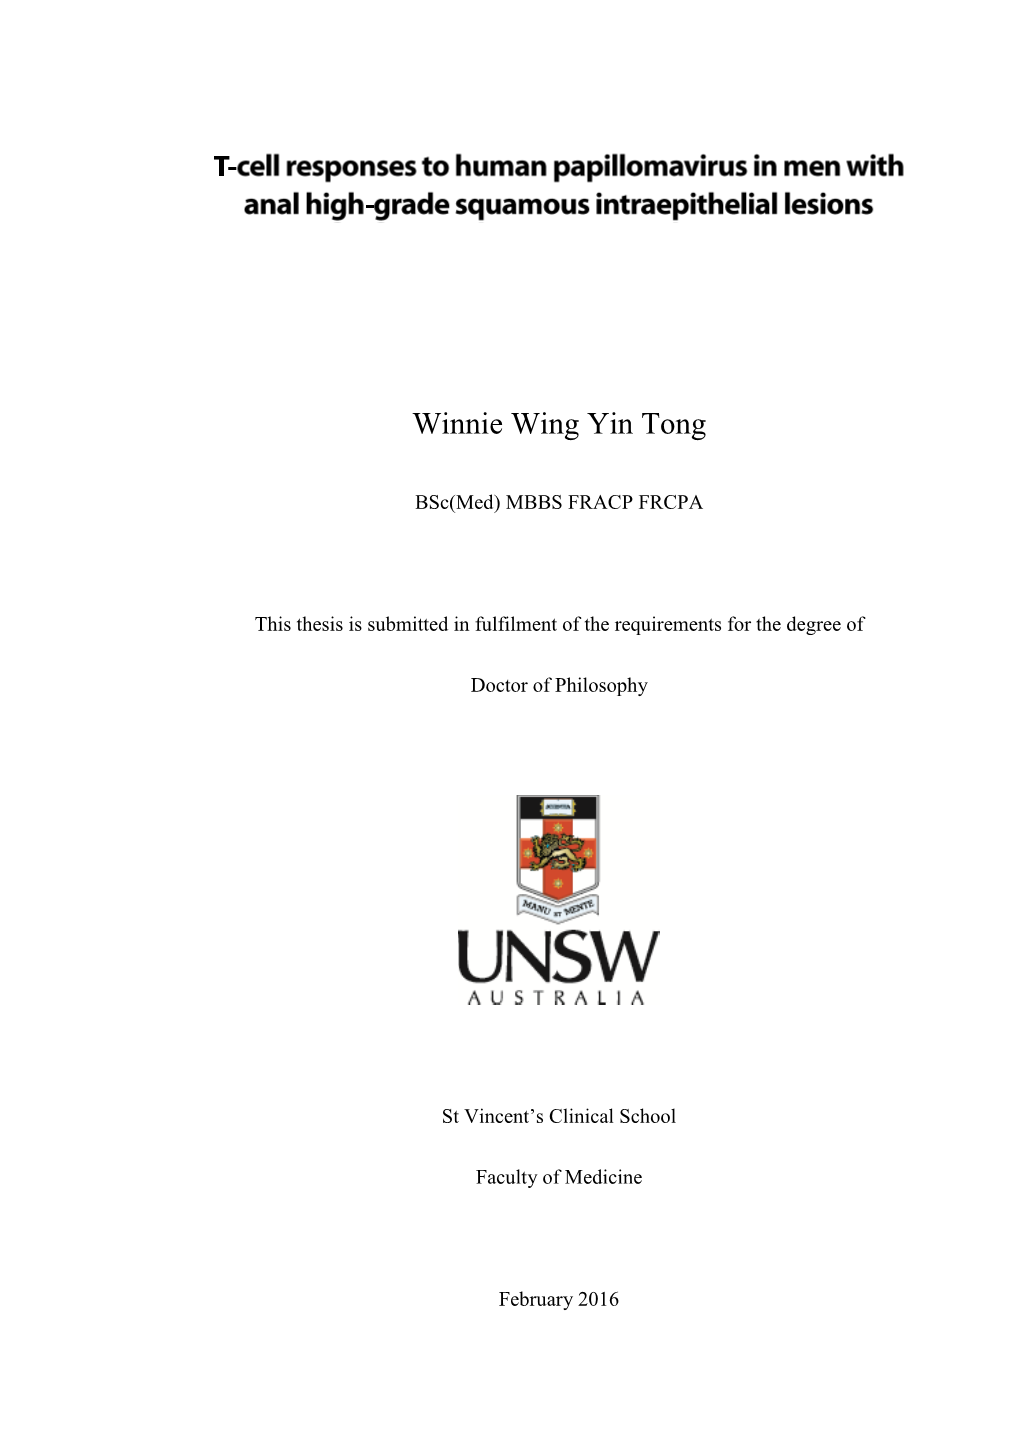 Winnie Wing Yin Tong